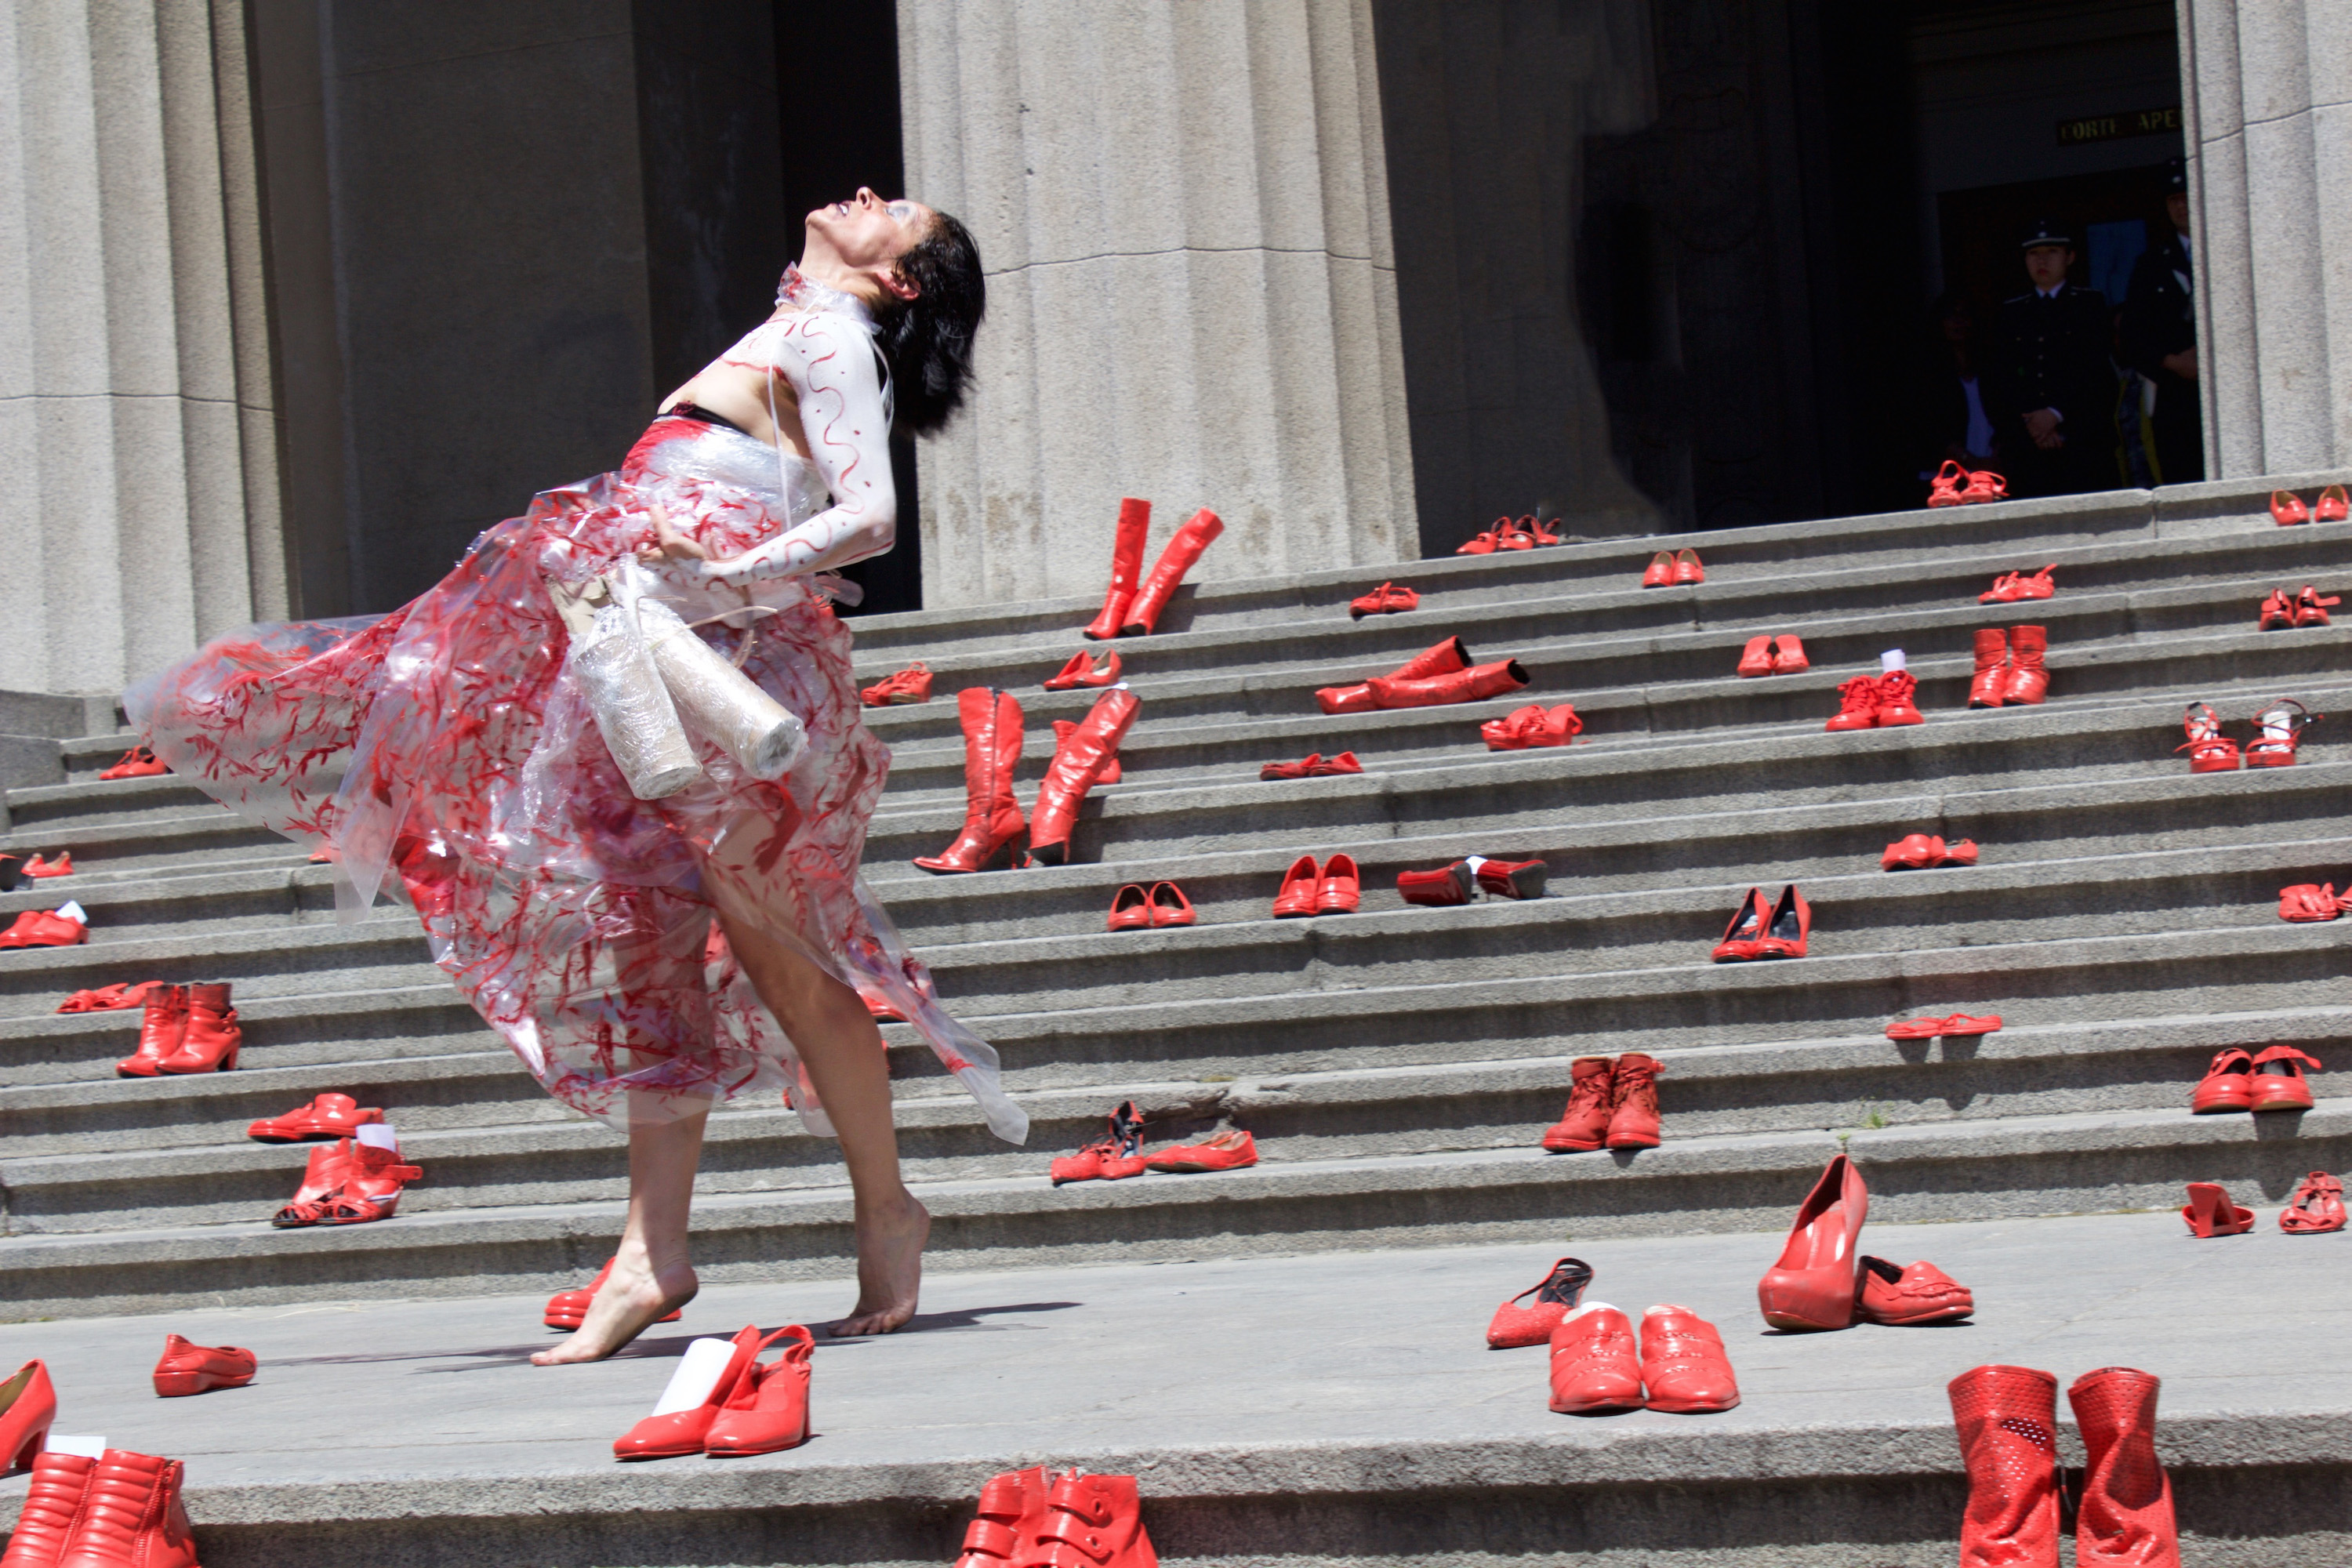 Cientos de zapatos rojos se instalaron en la Corte de Apelaciones de Valparaíso para decir “No a la violencia de género” Ministerio de las Culturas, las Artes y el Patrimonio